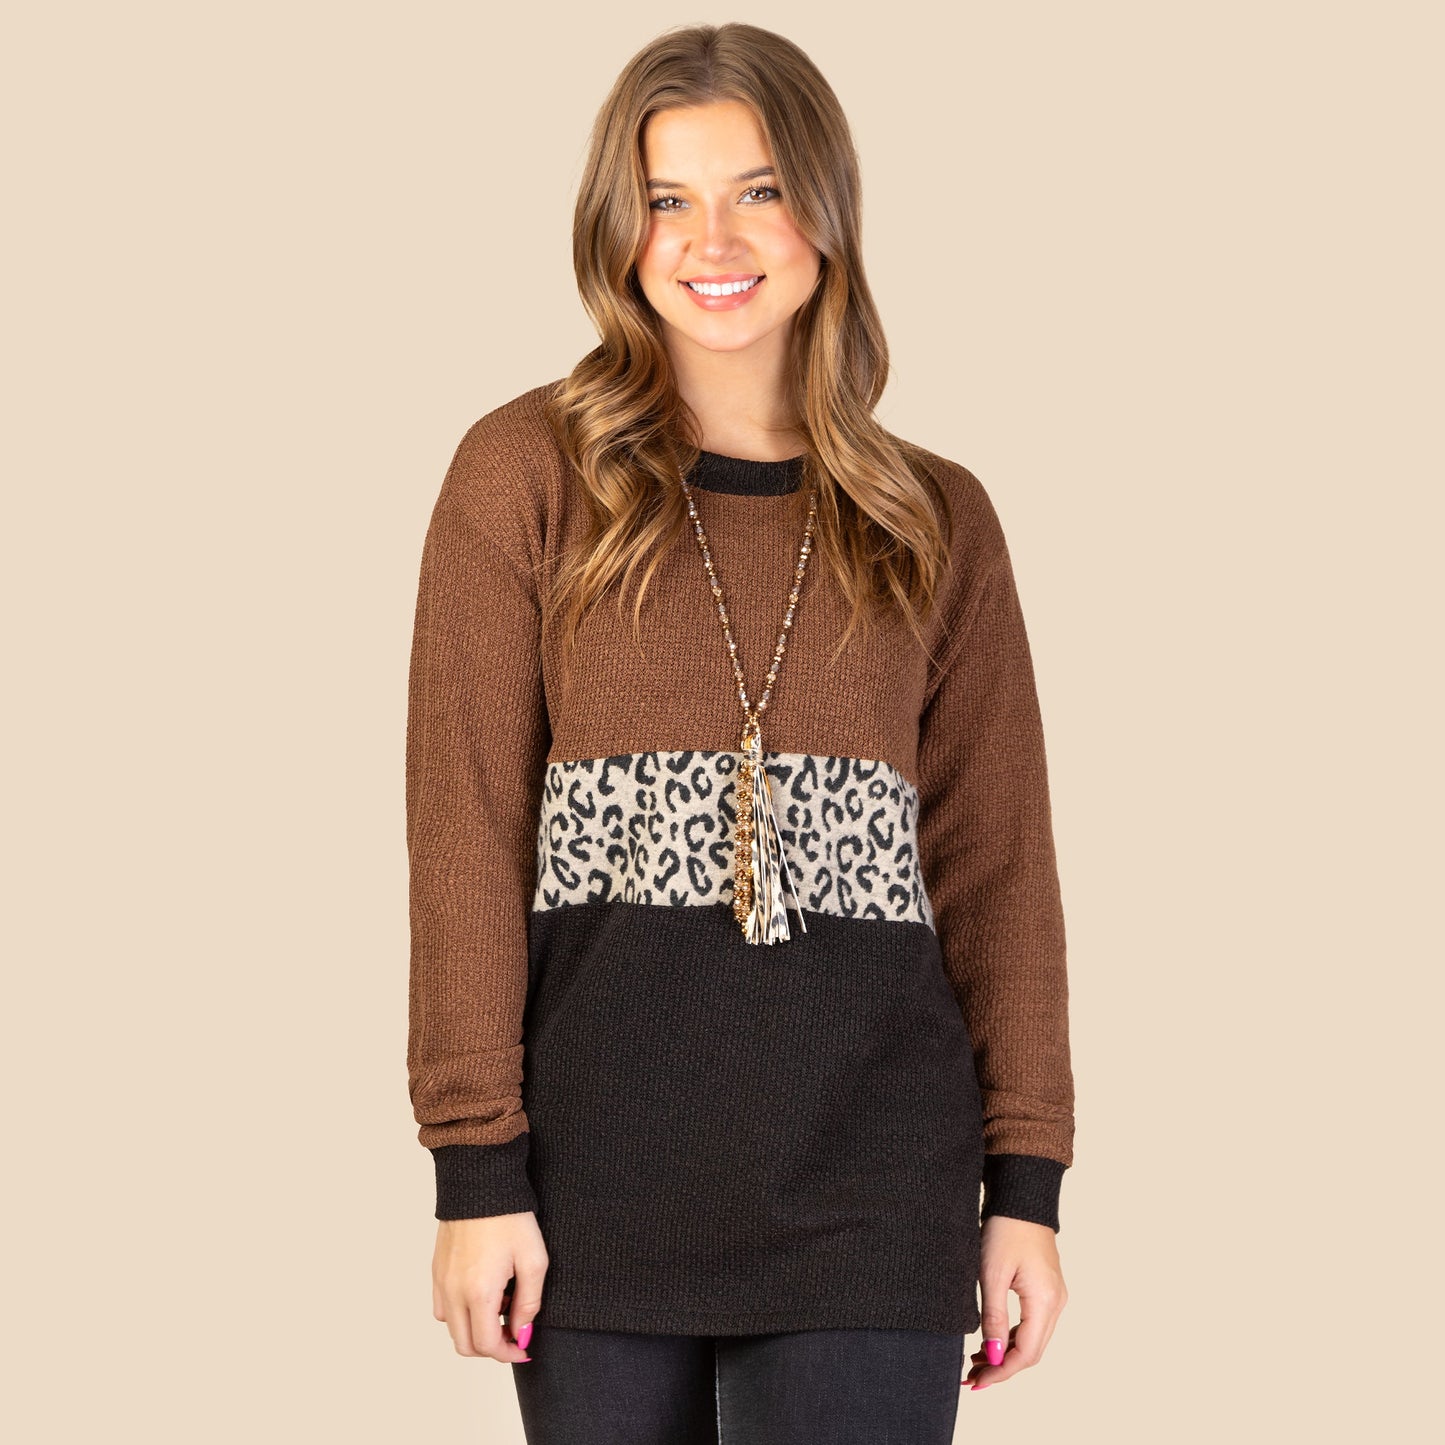 Lovely Leopard Sweater